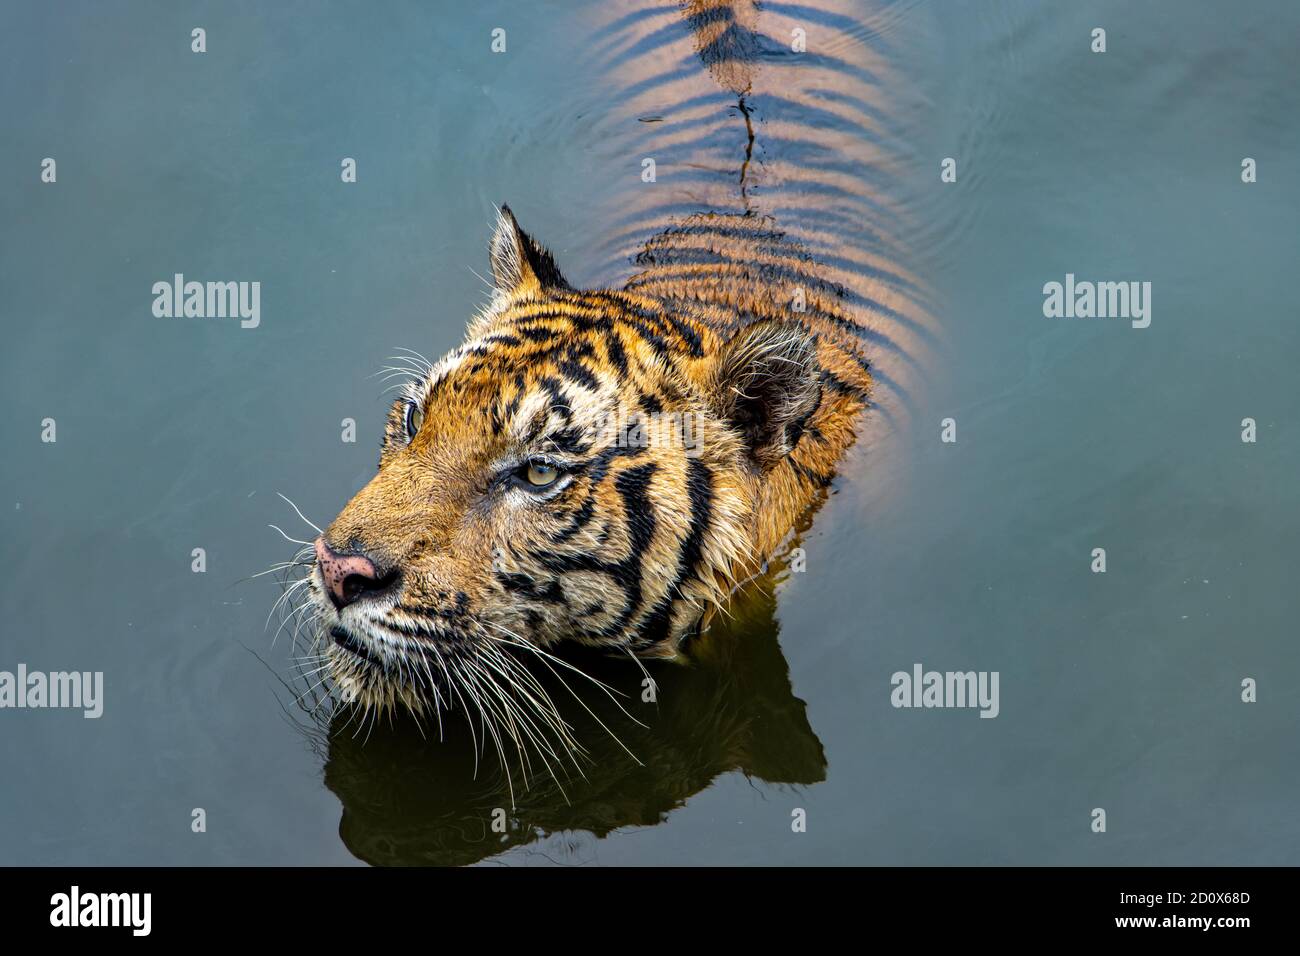 Der Tiger steht im Wasser und schaut sich um. Stockfoto